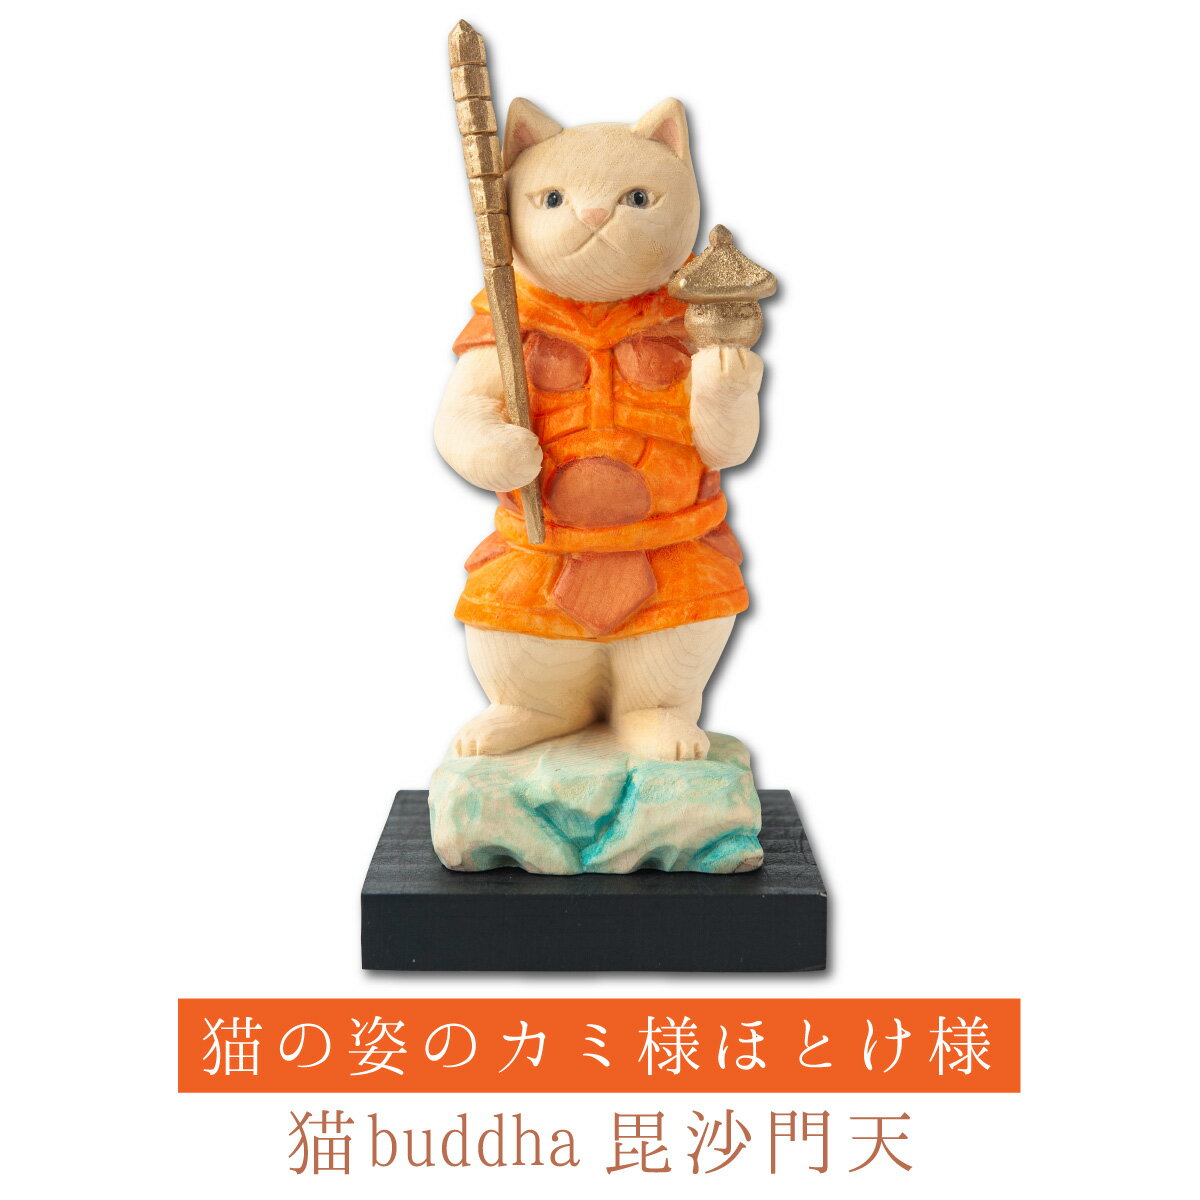 【開運ねこグッズ】 猫buddha 猫福神 毘沙門天 ≫勝負勝運祈願や開店祝いや新築祝いなどのギフトにも最適な縁起物の置物 猫buddha(にゃんぶっだ)は手乗りサイズのかわいい猫のカミ様・ほとけ様のシリーズです。